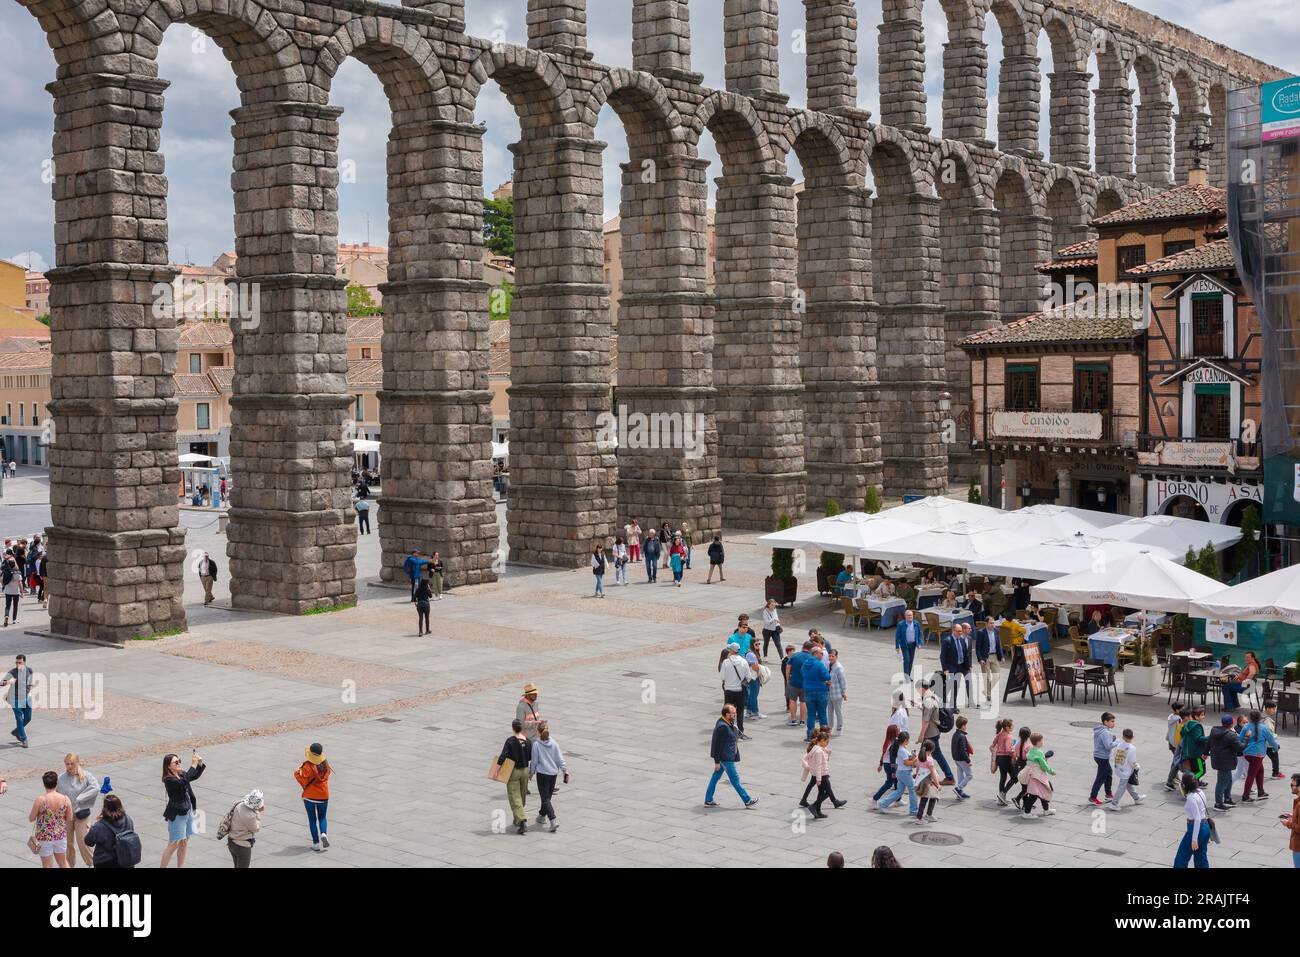 Turismo cittadino in Spagna, vista estiva della Plaza del Azoguelo e del magnifico acquedotto romano del i secolo d.C. nel centro di Segovia, Spagna Foto Stock